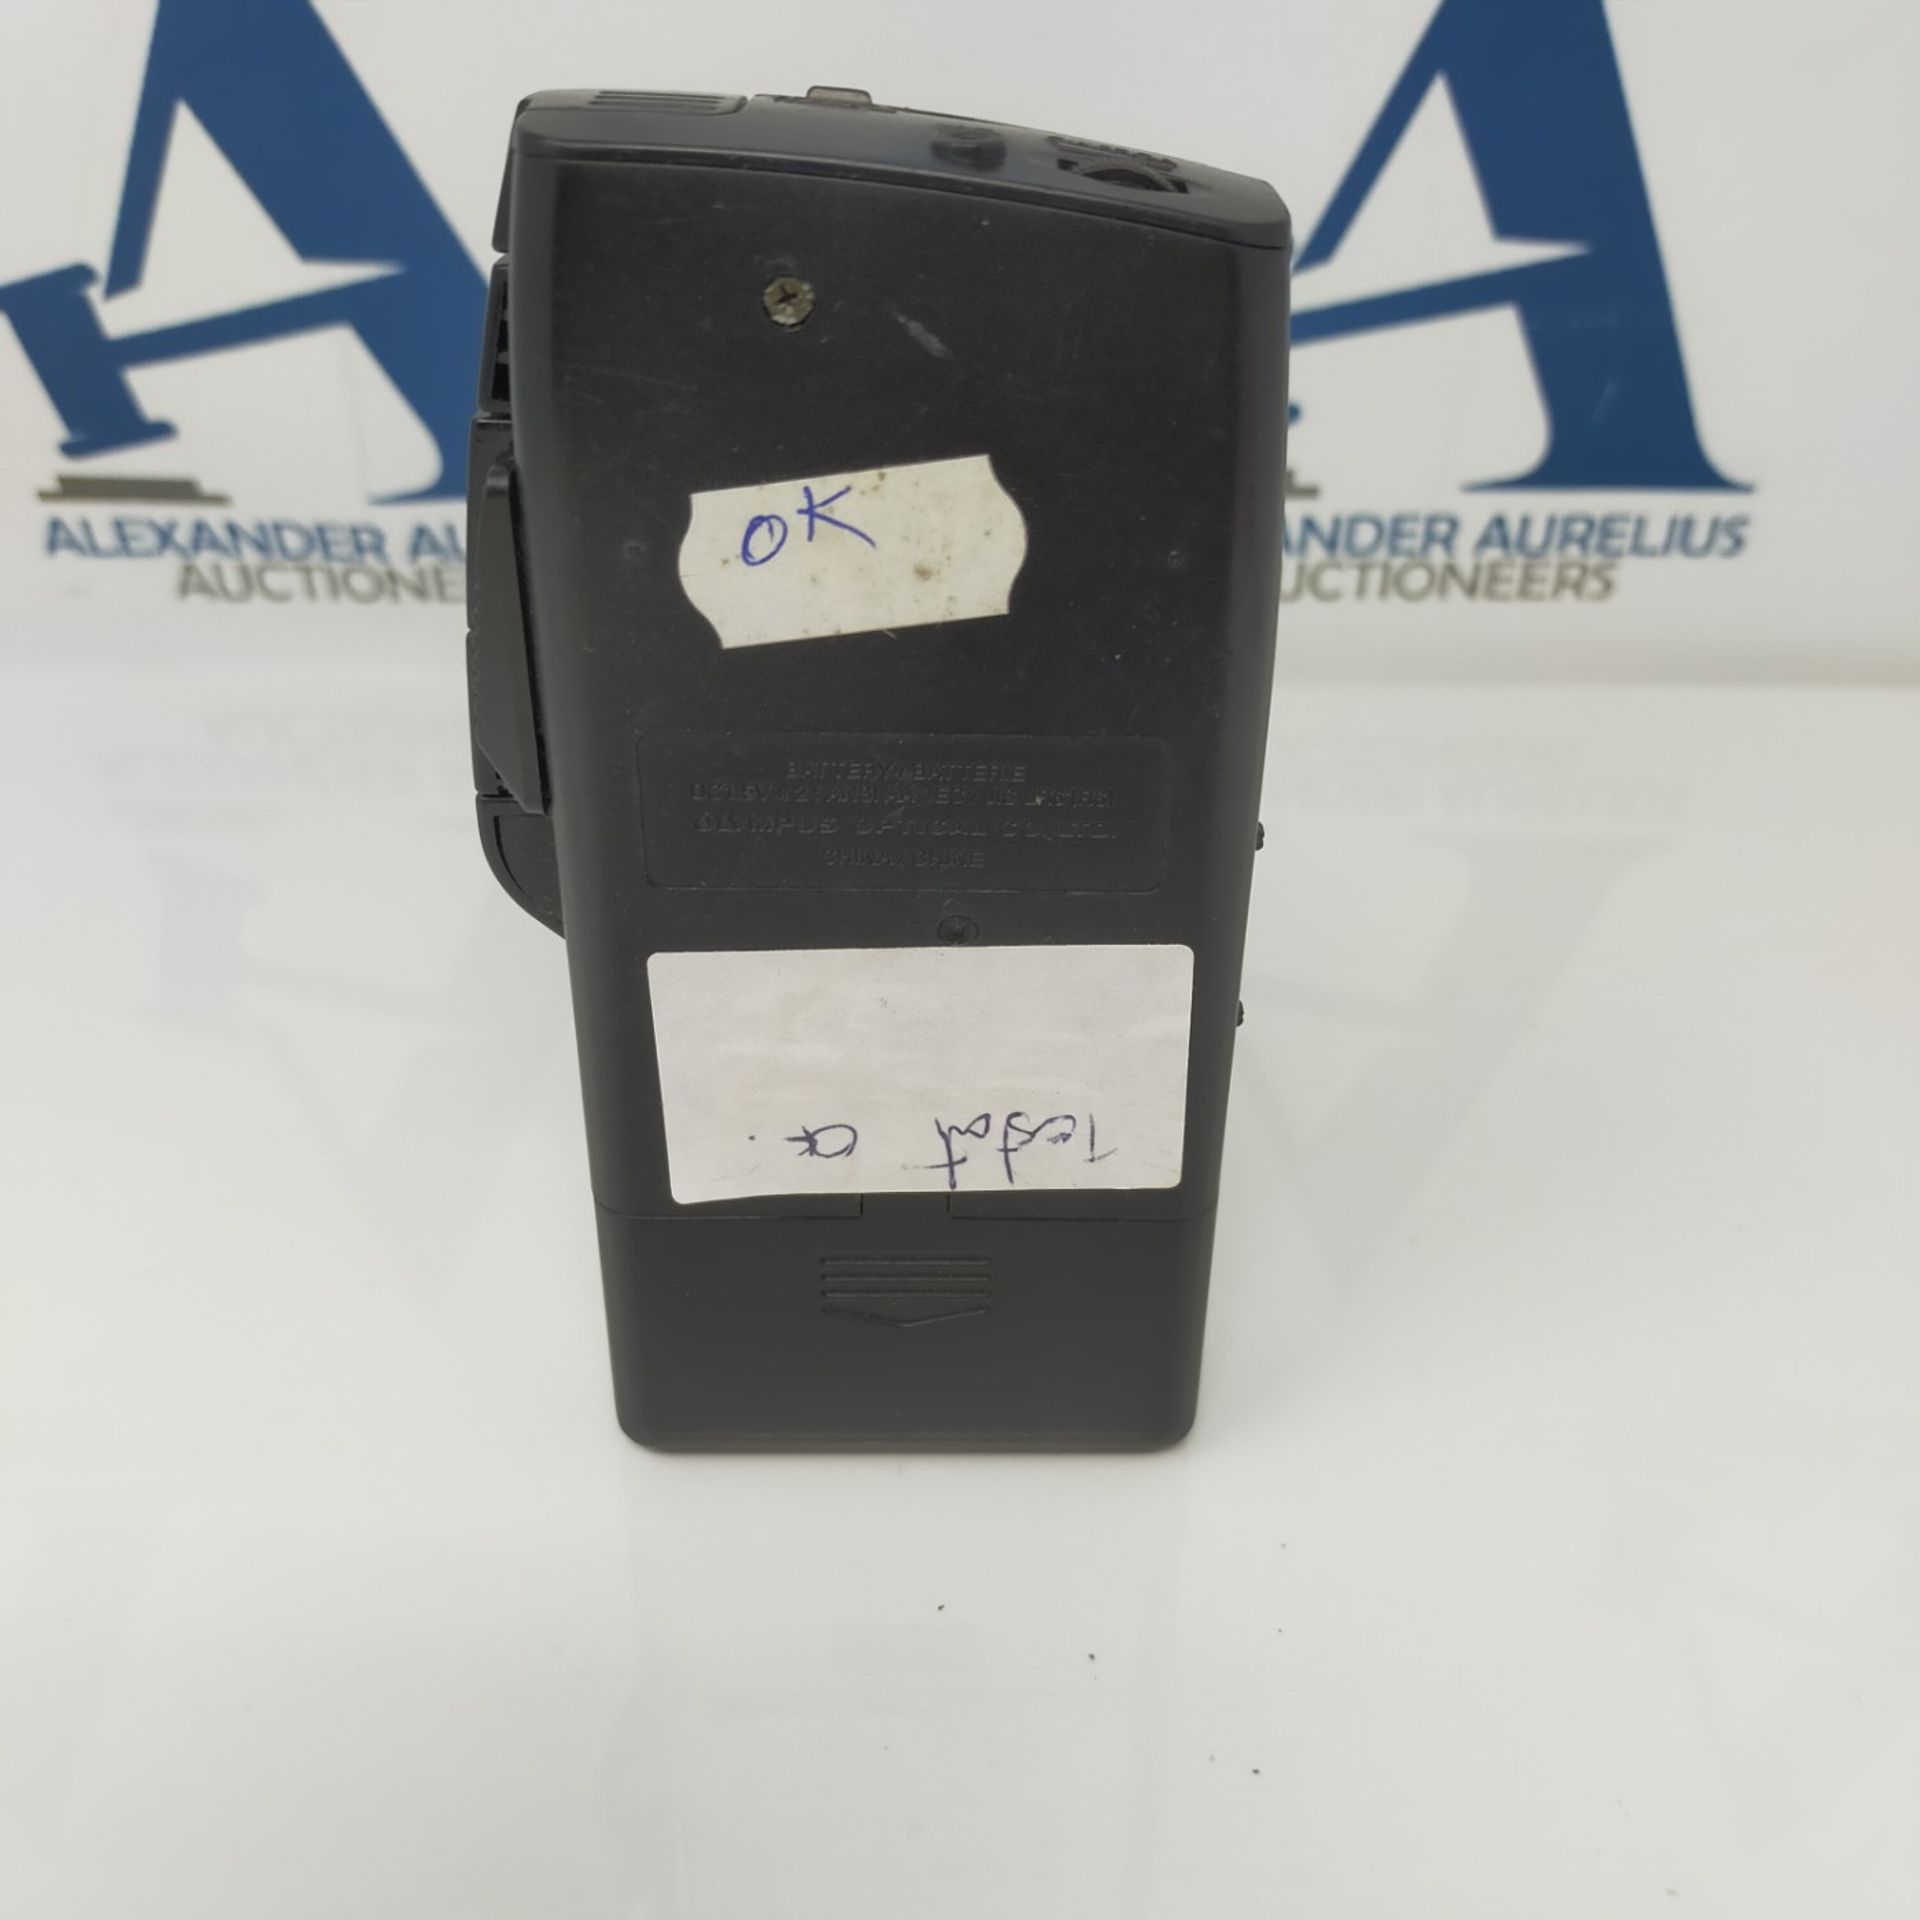 Olympus Pearlcorder S700 Microcassette Recorder - Bild 2 aus 2